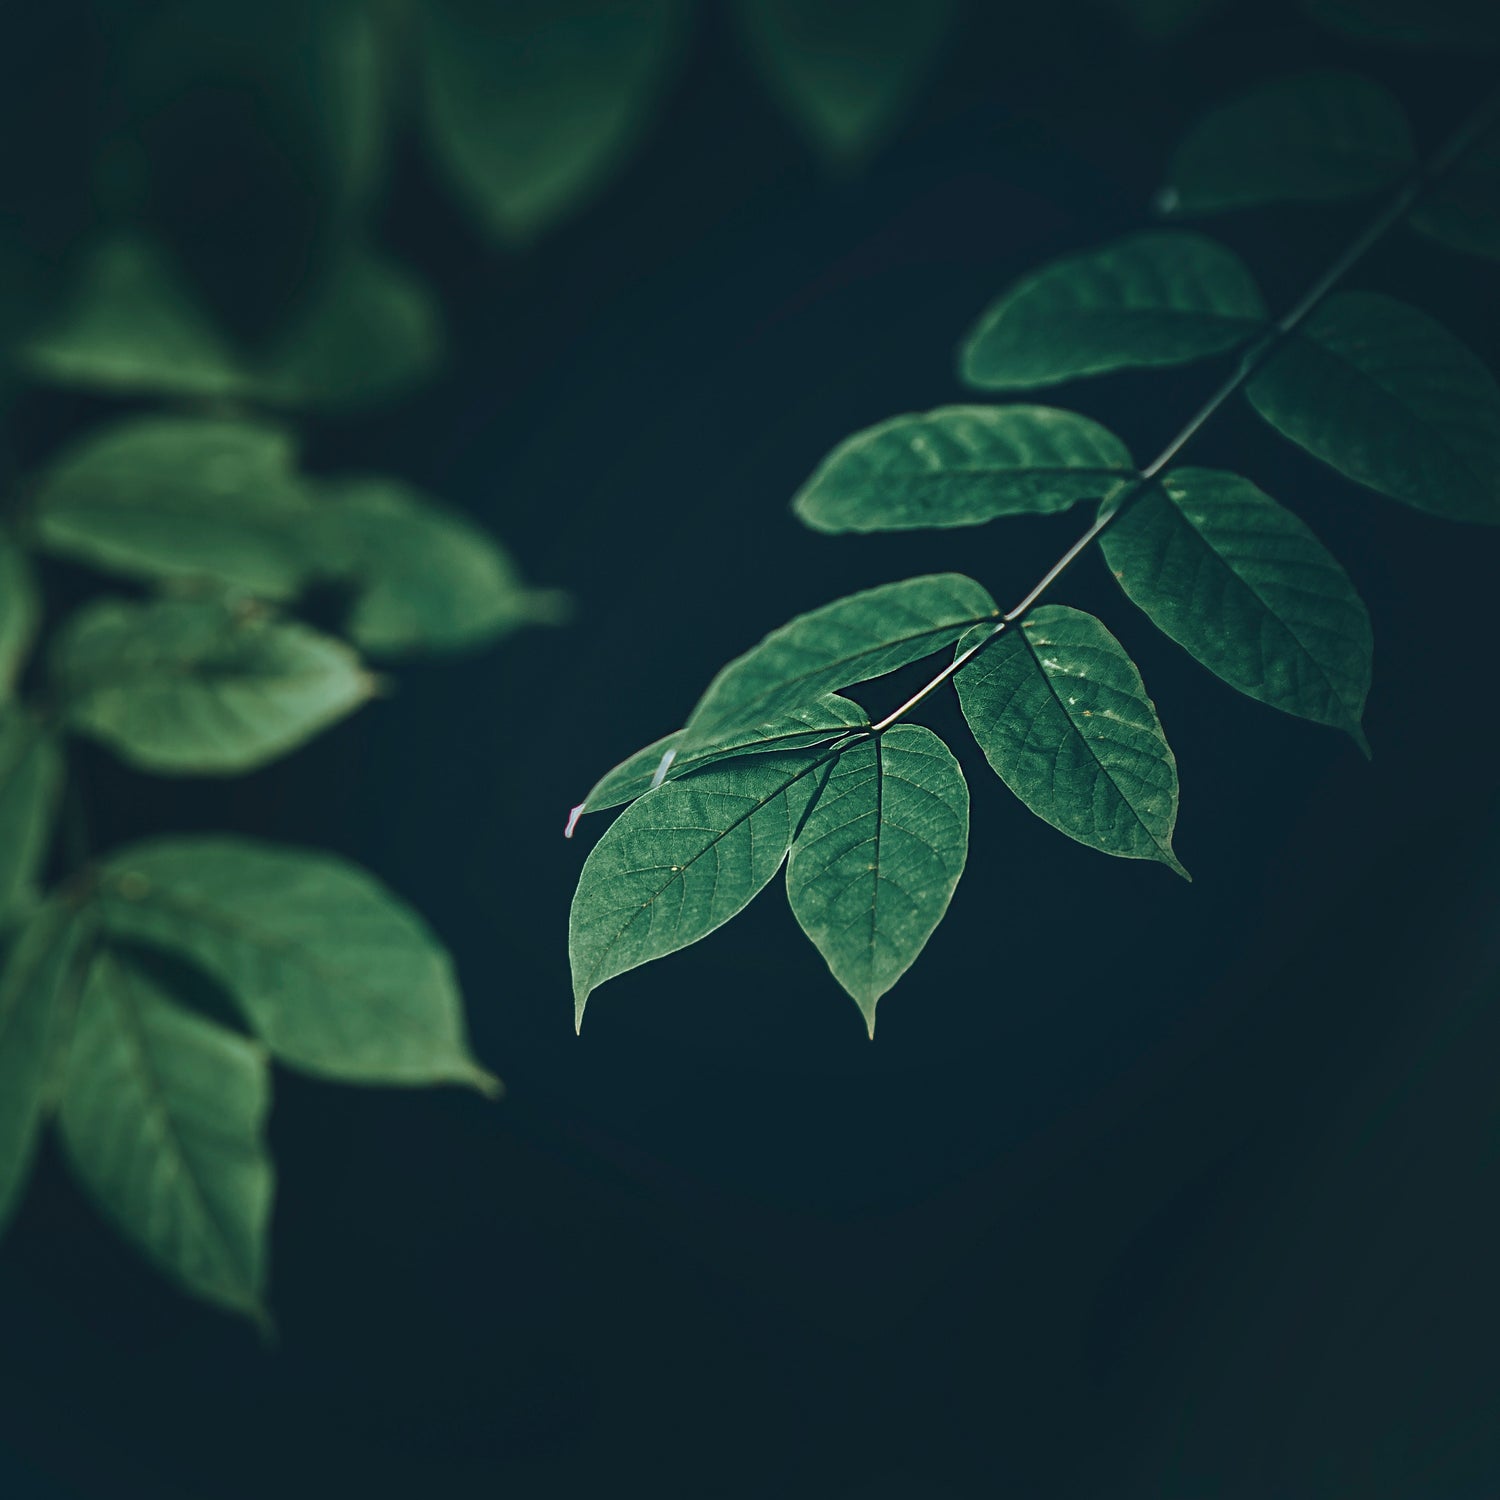 Plante verte sur fond noir pour communiquer sur une mode éco-responsable 